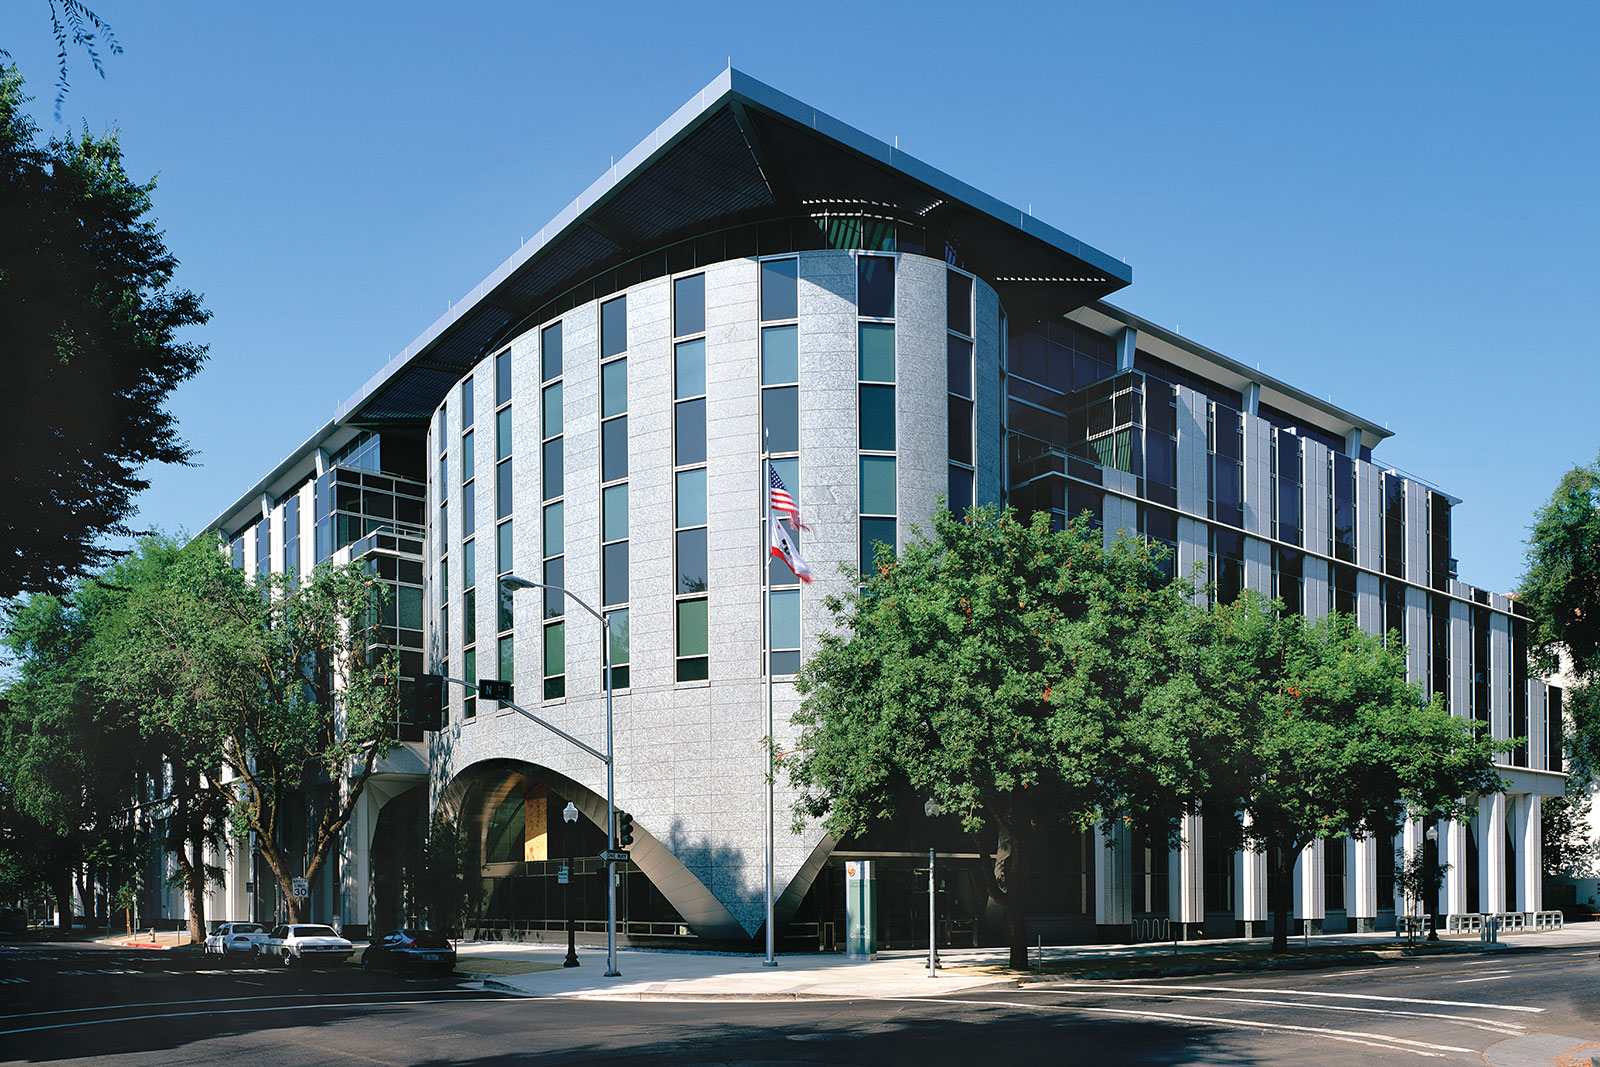 California Department of Education Headquarters